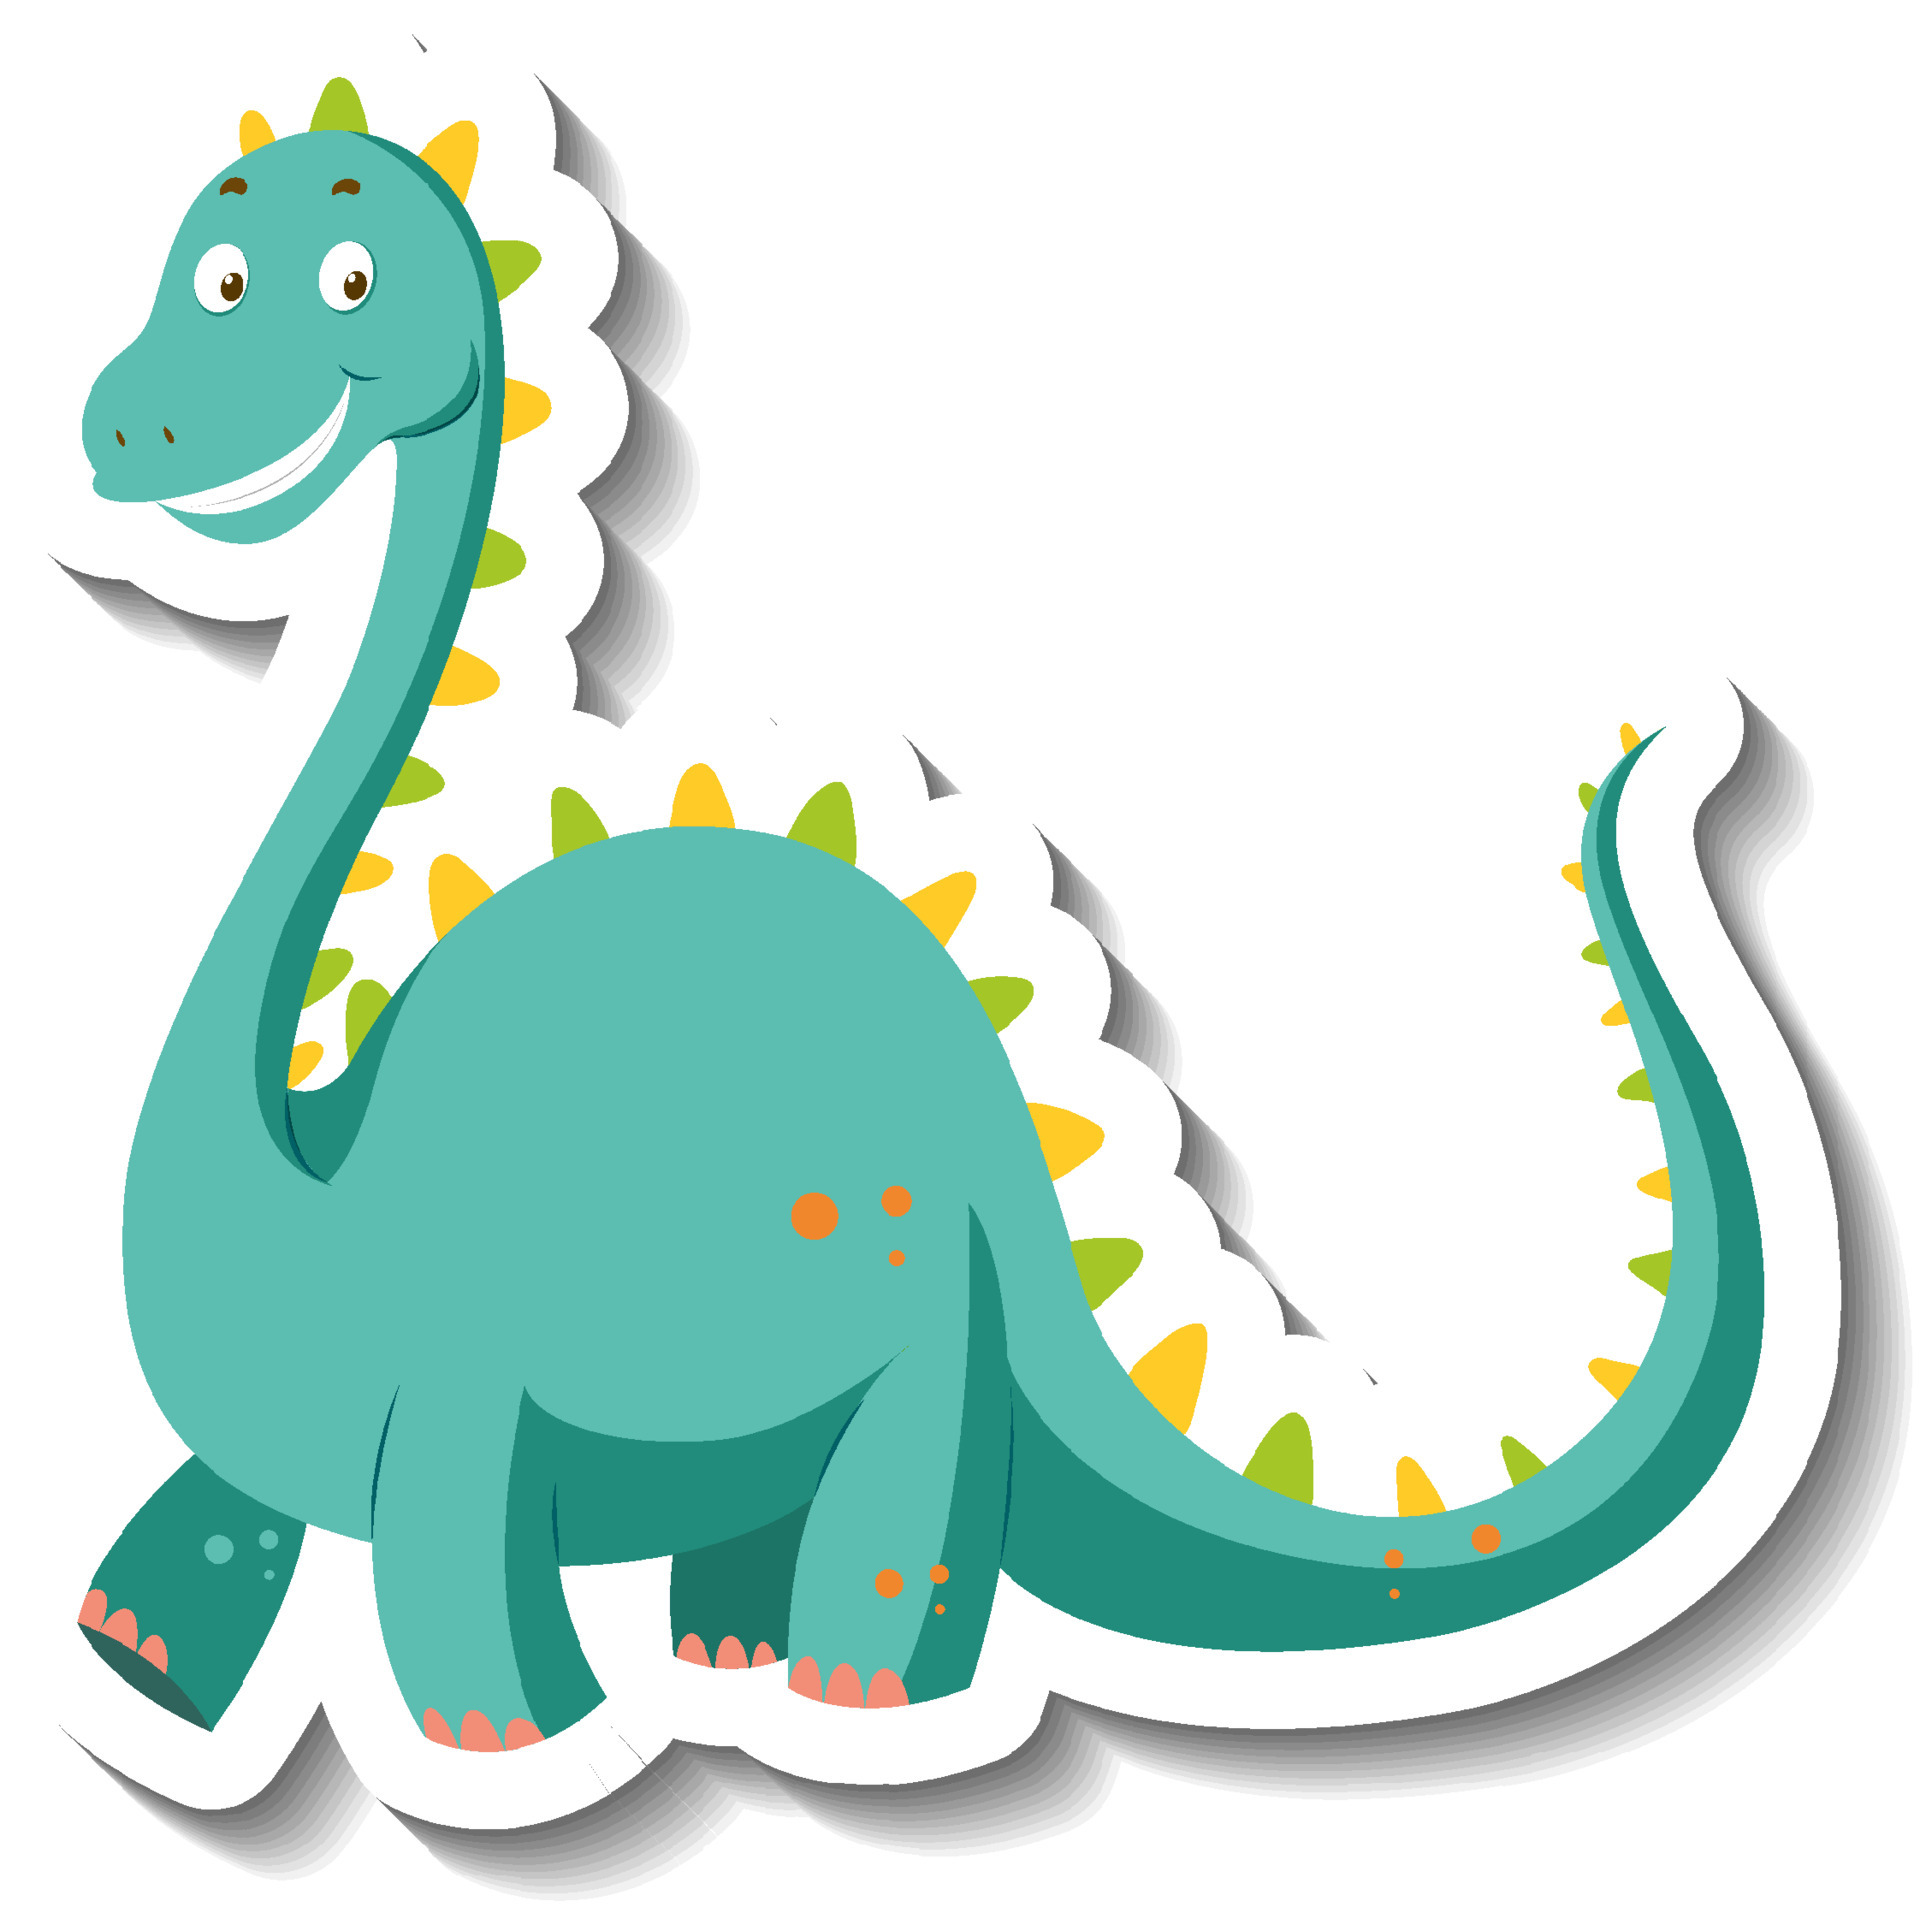 Cute green dinosaur cartoon character sticker 4010077 Vector Art at Vecteezy